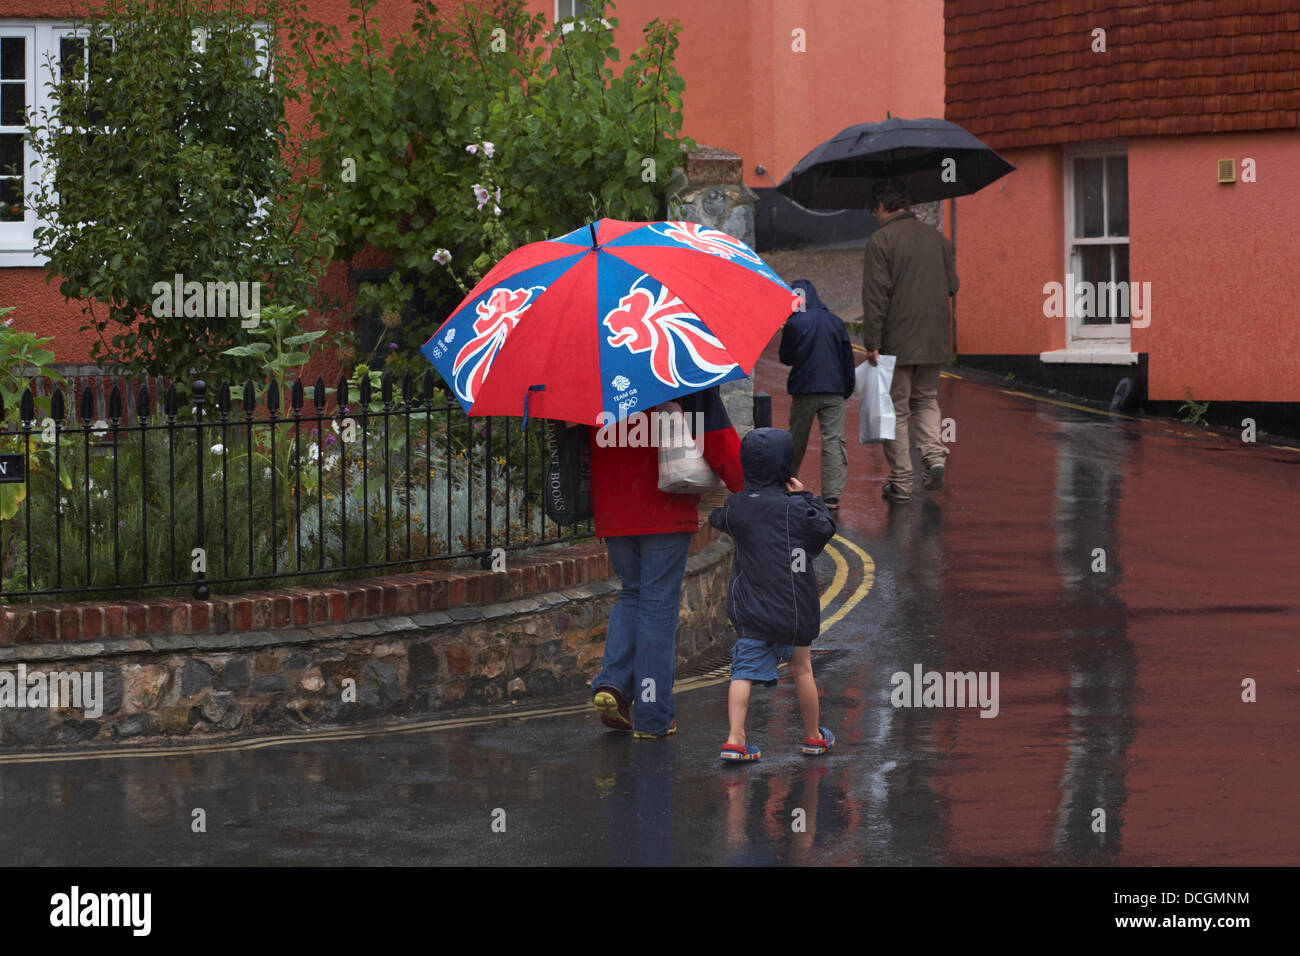 Lyme Regis, Royaume-Uni 17 Août 2013. Les touristes bravent le temps humide. La famille marche le long des rues sous les parasols pour essayer de rester au sec sous l'abri. Crédit: Carolyn Jenkins/Alay Live News Banque D'Images